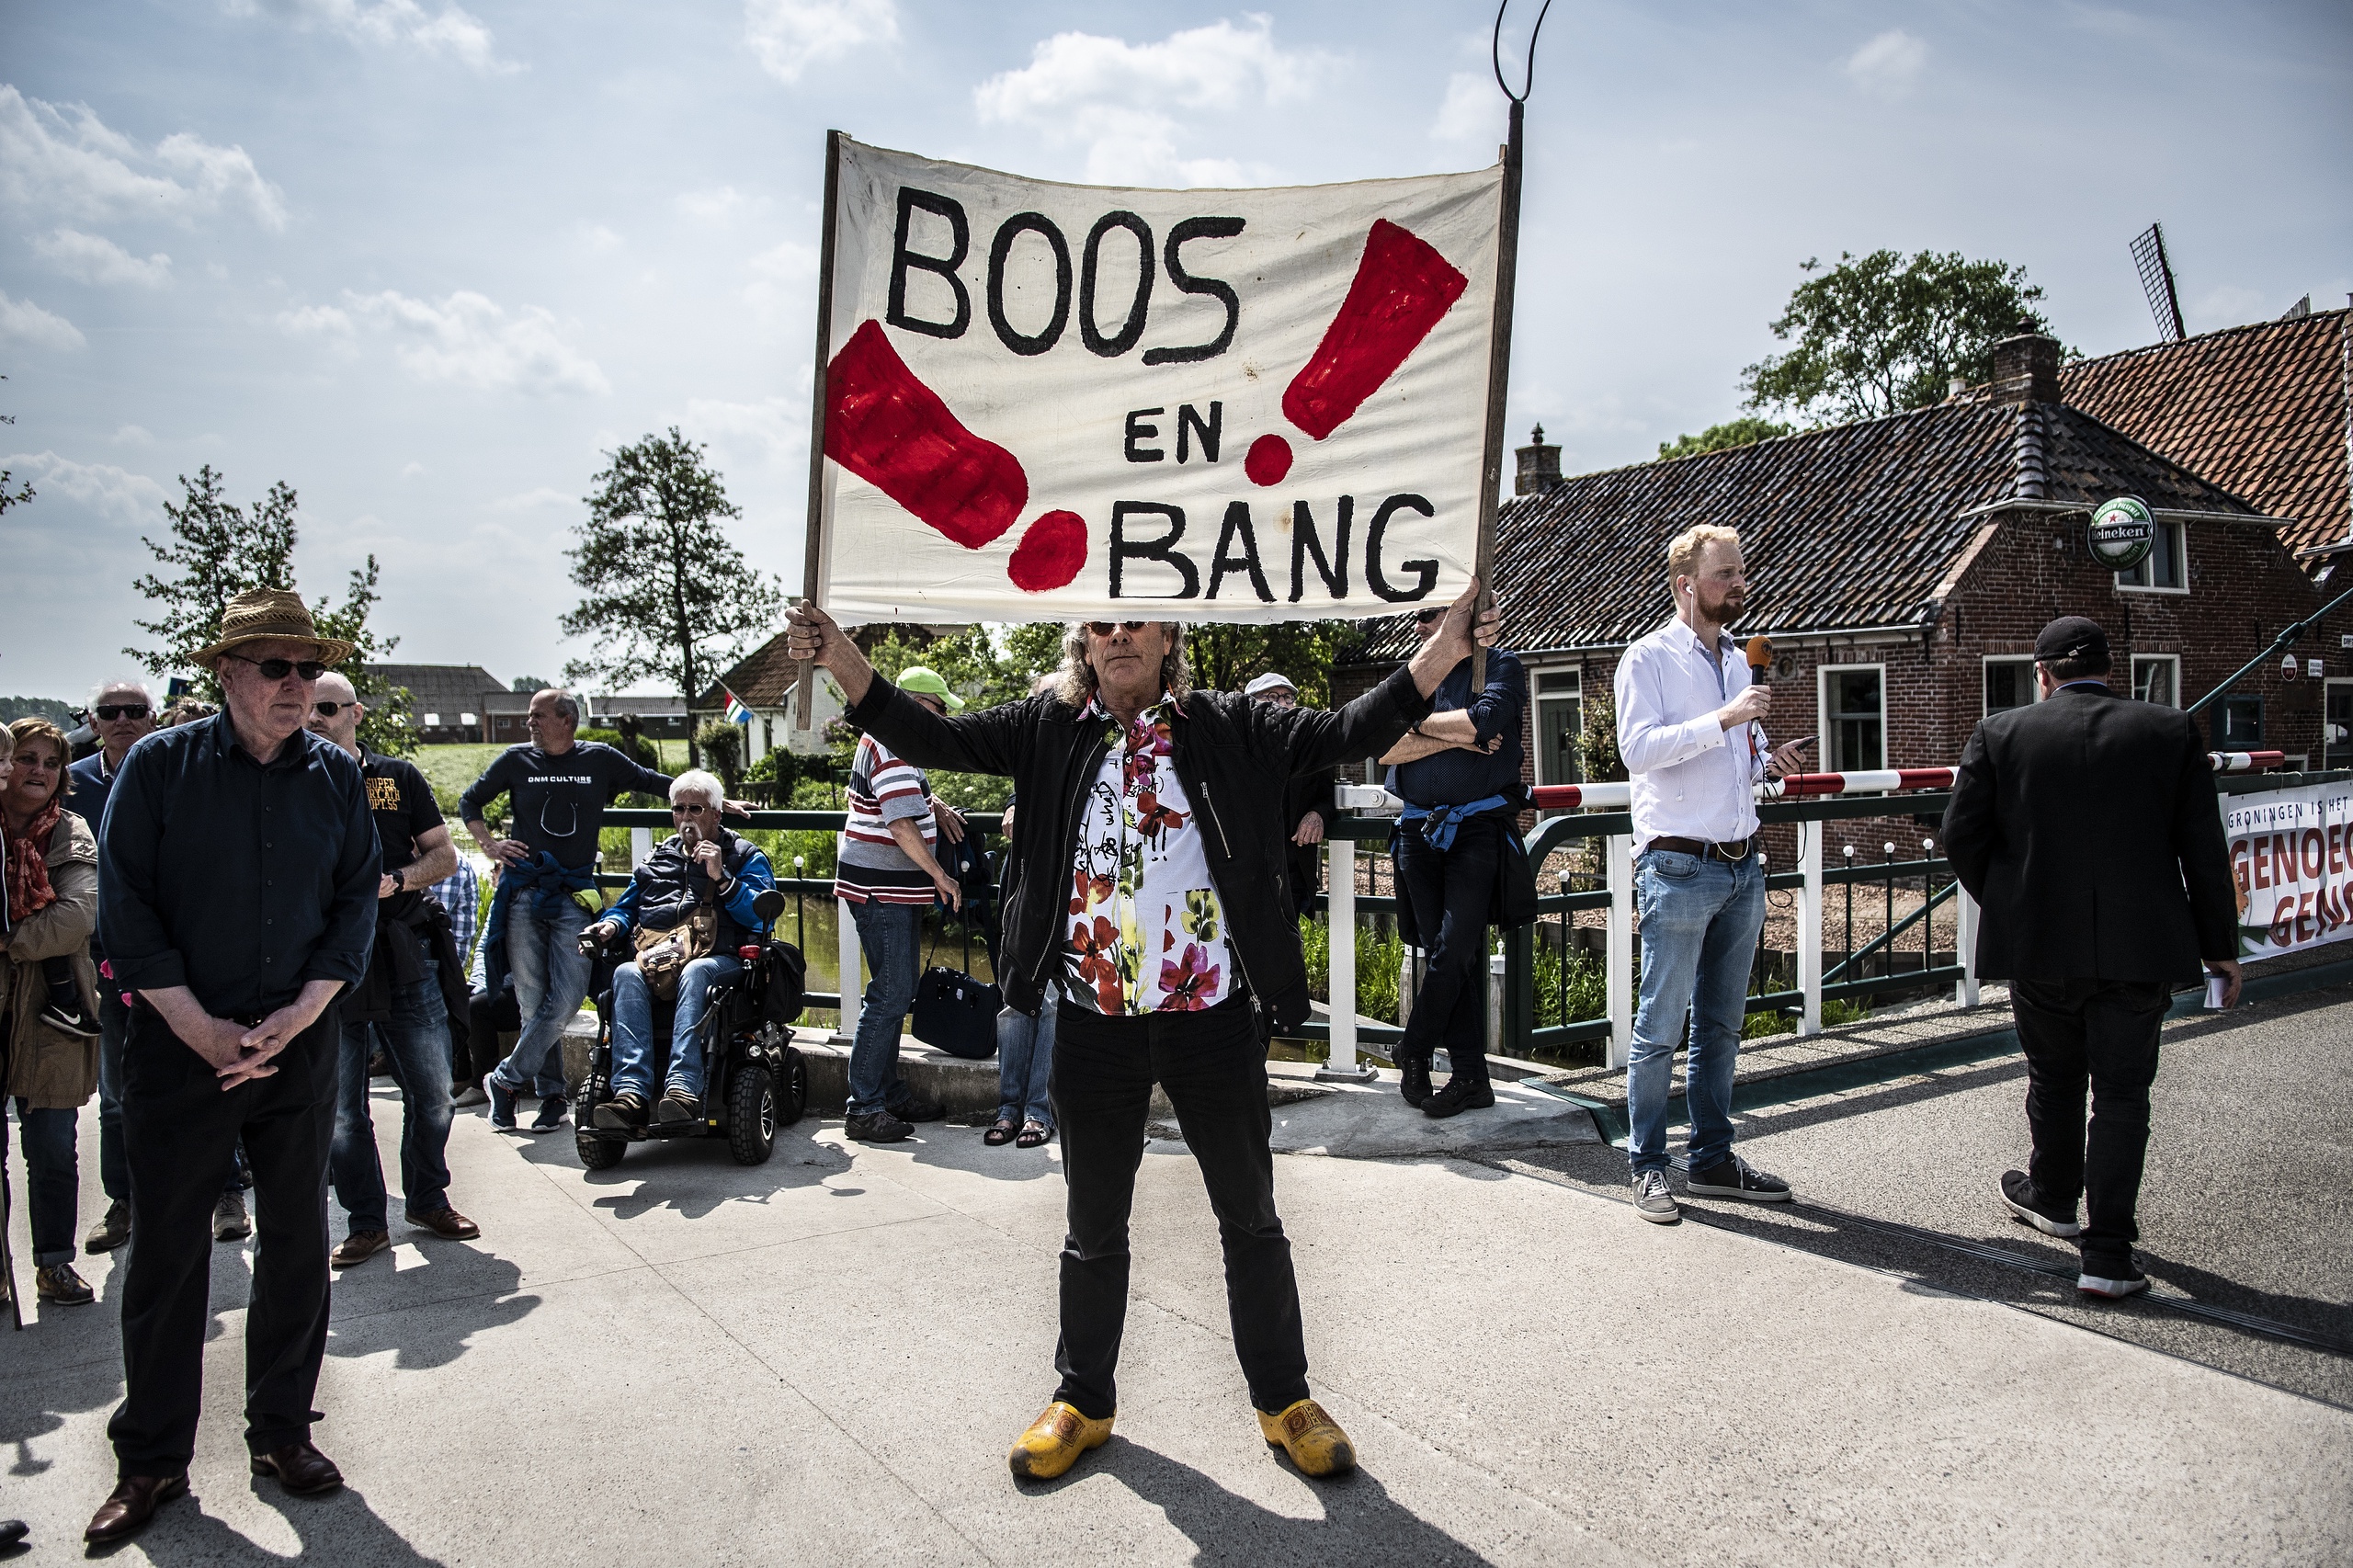 Minister Wiebes en minister Ollongren bezochten in 2019 Westerwijtwerd na de zware aardbeving in het dorp. Ze werden opgewacht door boze en verontruste bewoners.